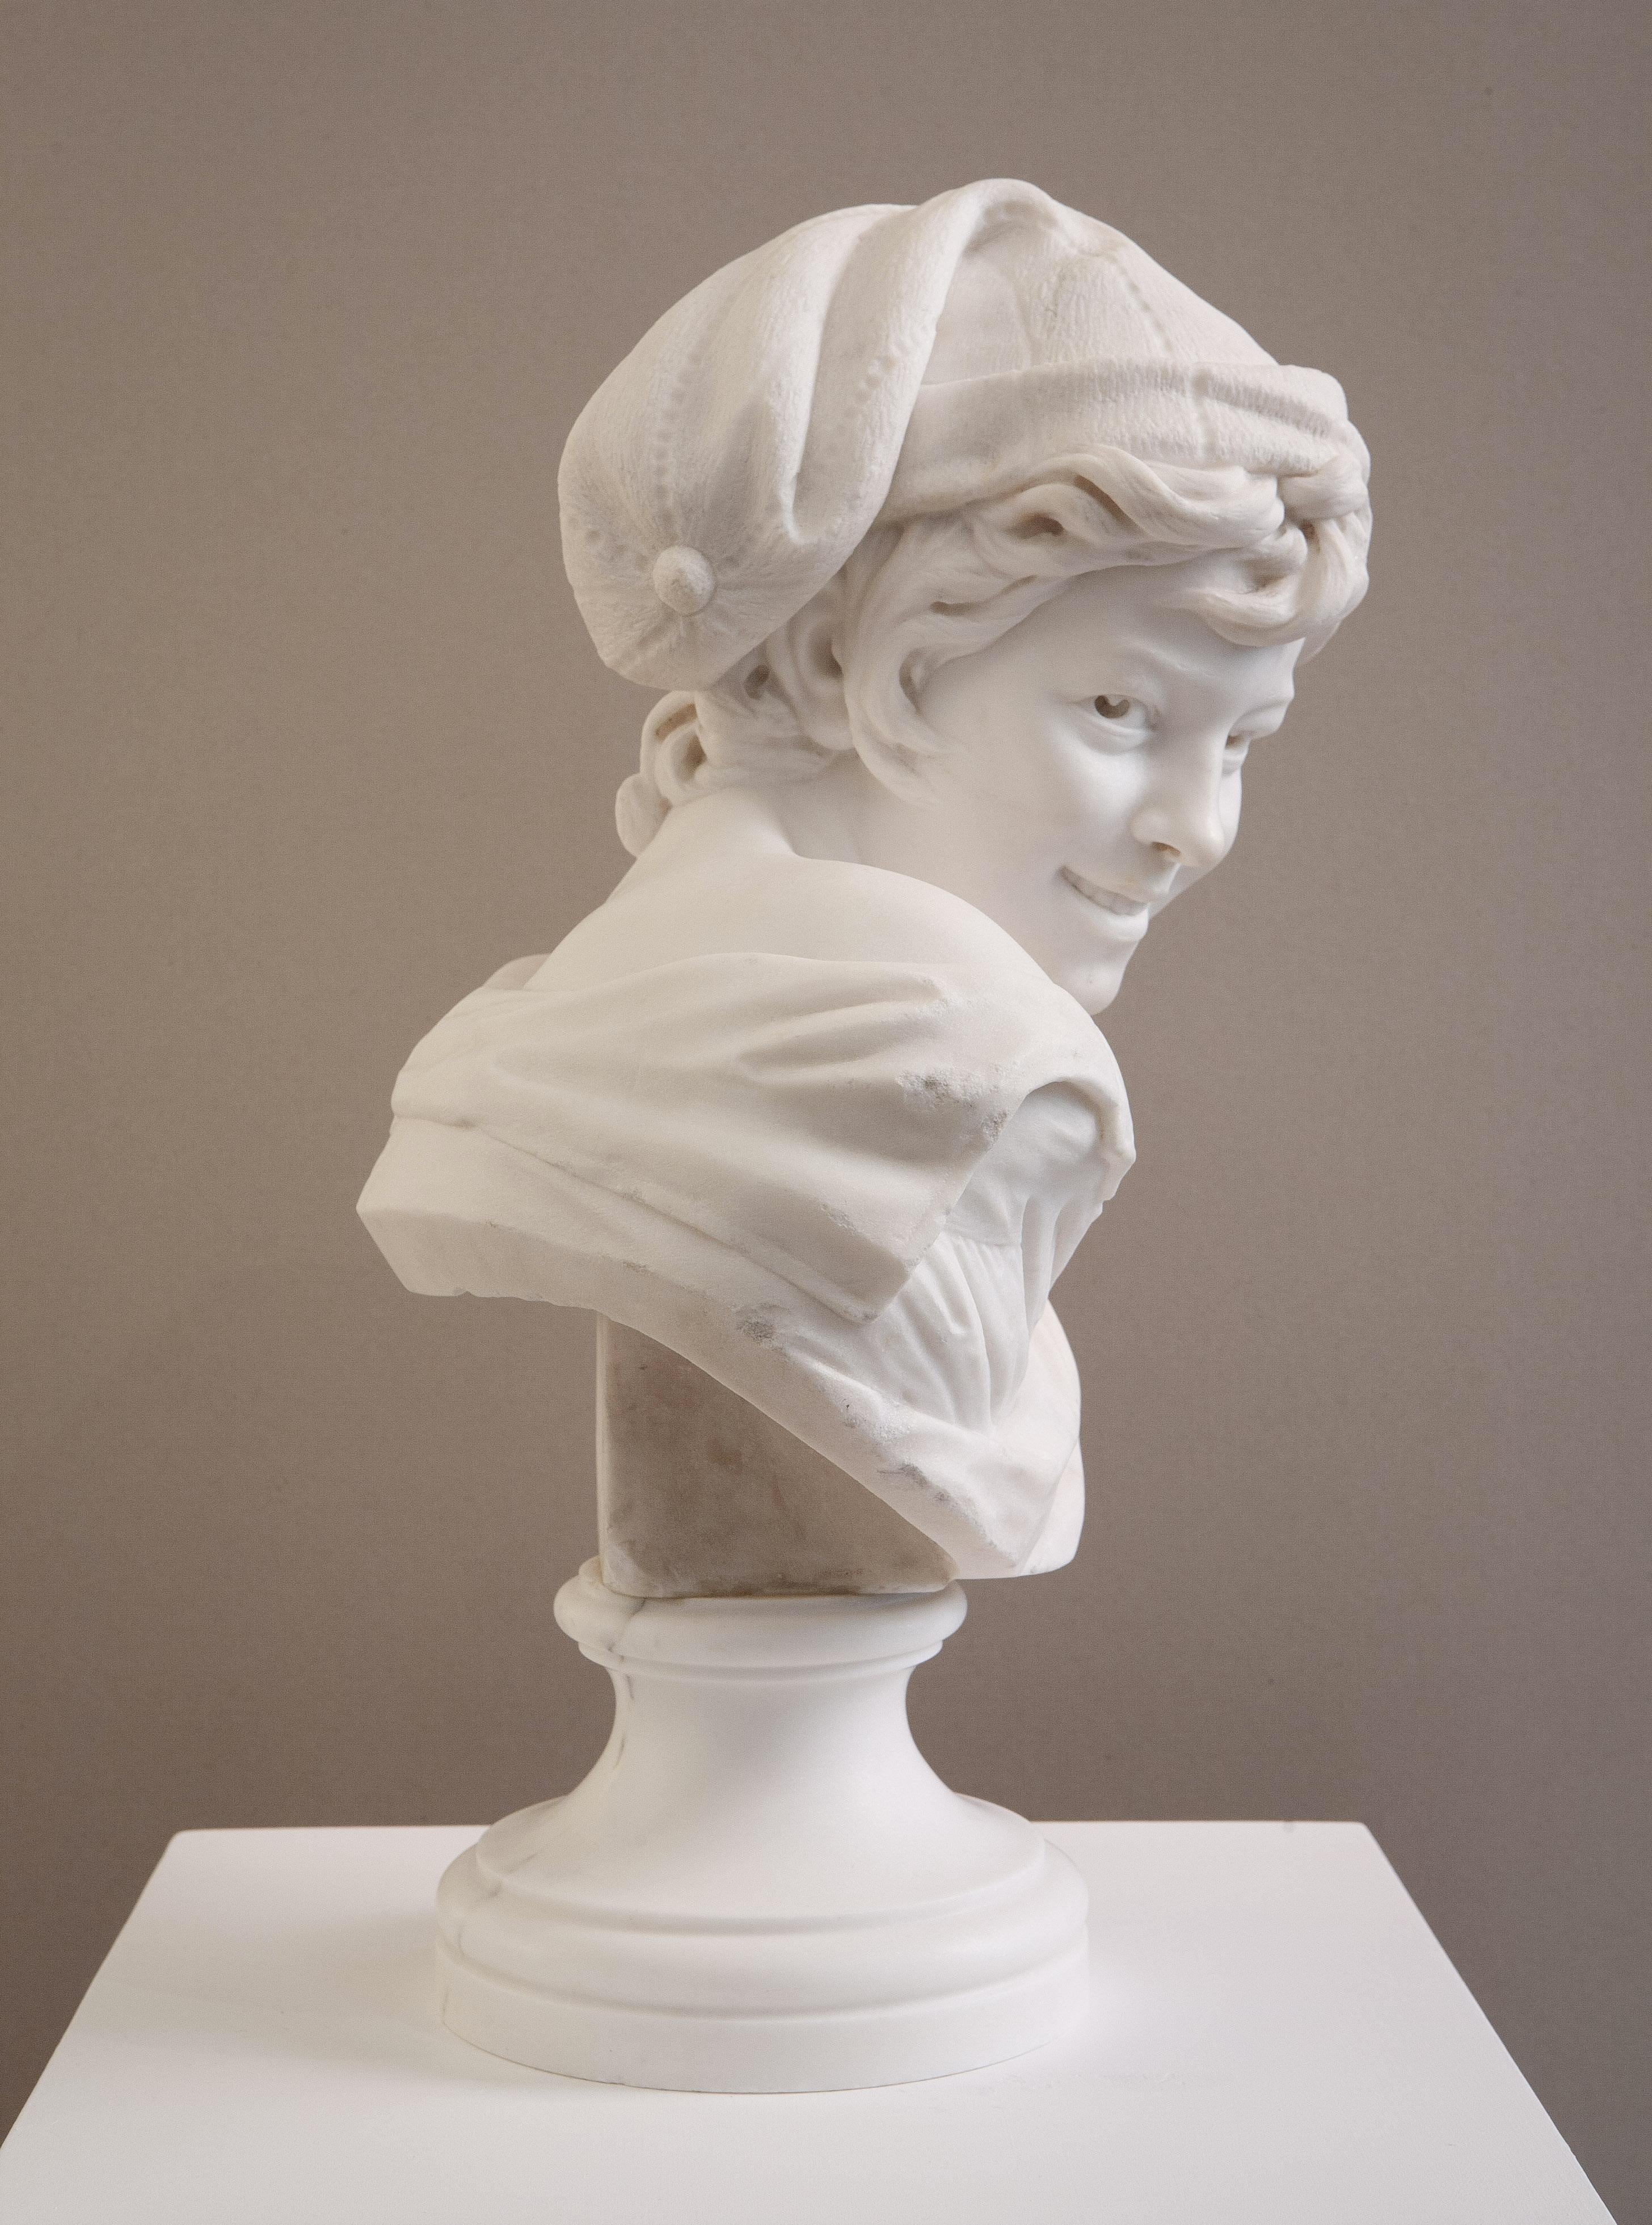 Le Rieur napolitain - Brown Figurative Sculpture by Jean-Baptiste Carpeaux (1827-1875)